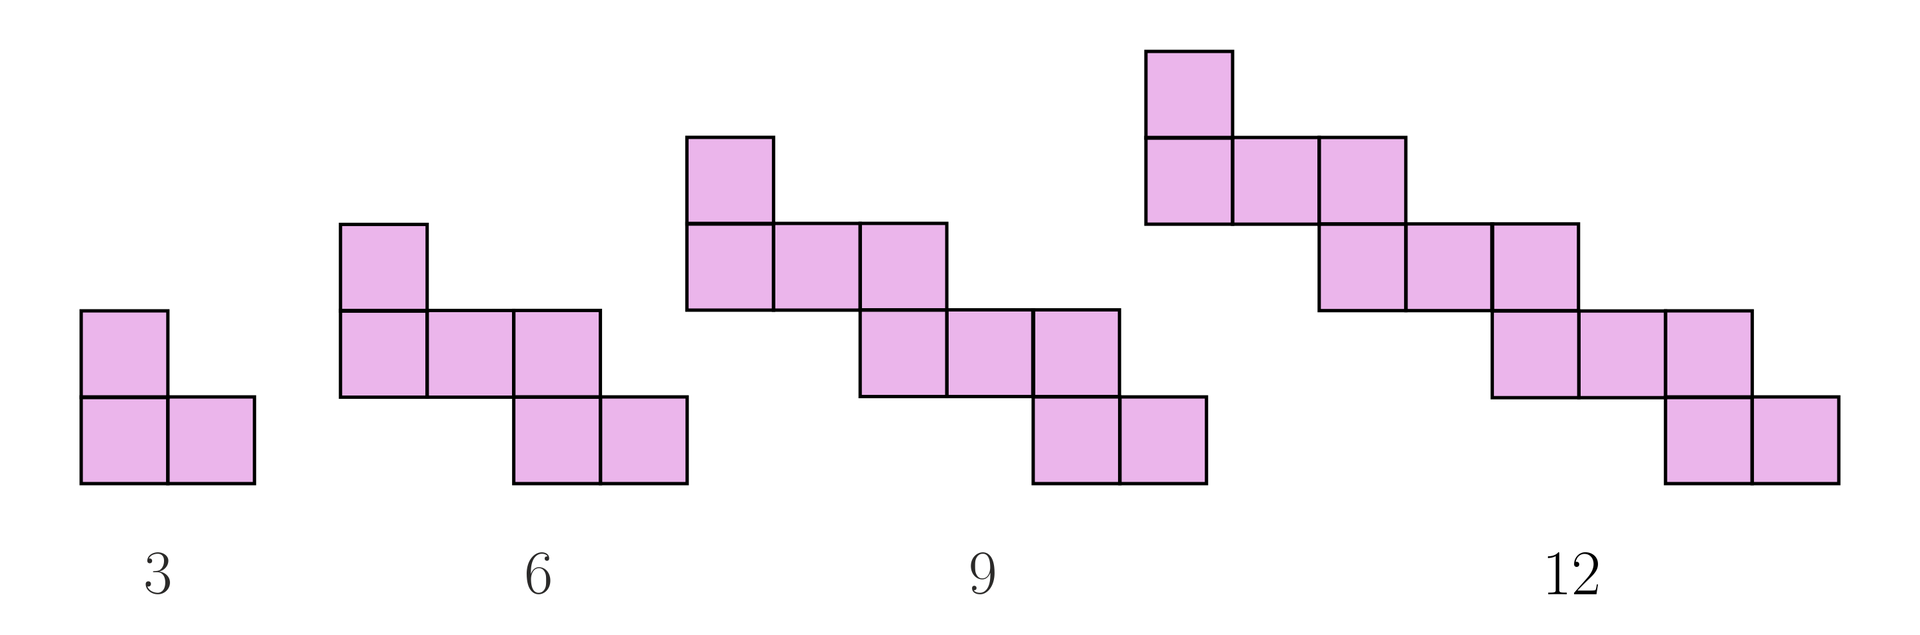 Ilustracja przedstawia cztery zygzakowate figury składające się z małych kwadracików. Pierwsza od lewej składa się z trzech kwadracików, druga z sześciu, trzecia z dziewięciu, a czwarta z dwunastu.